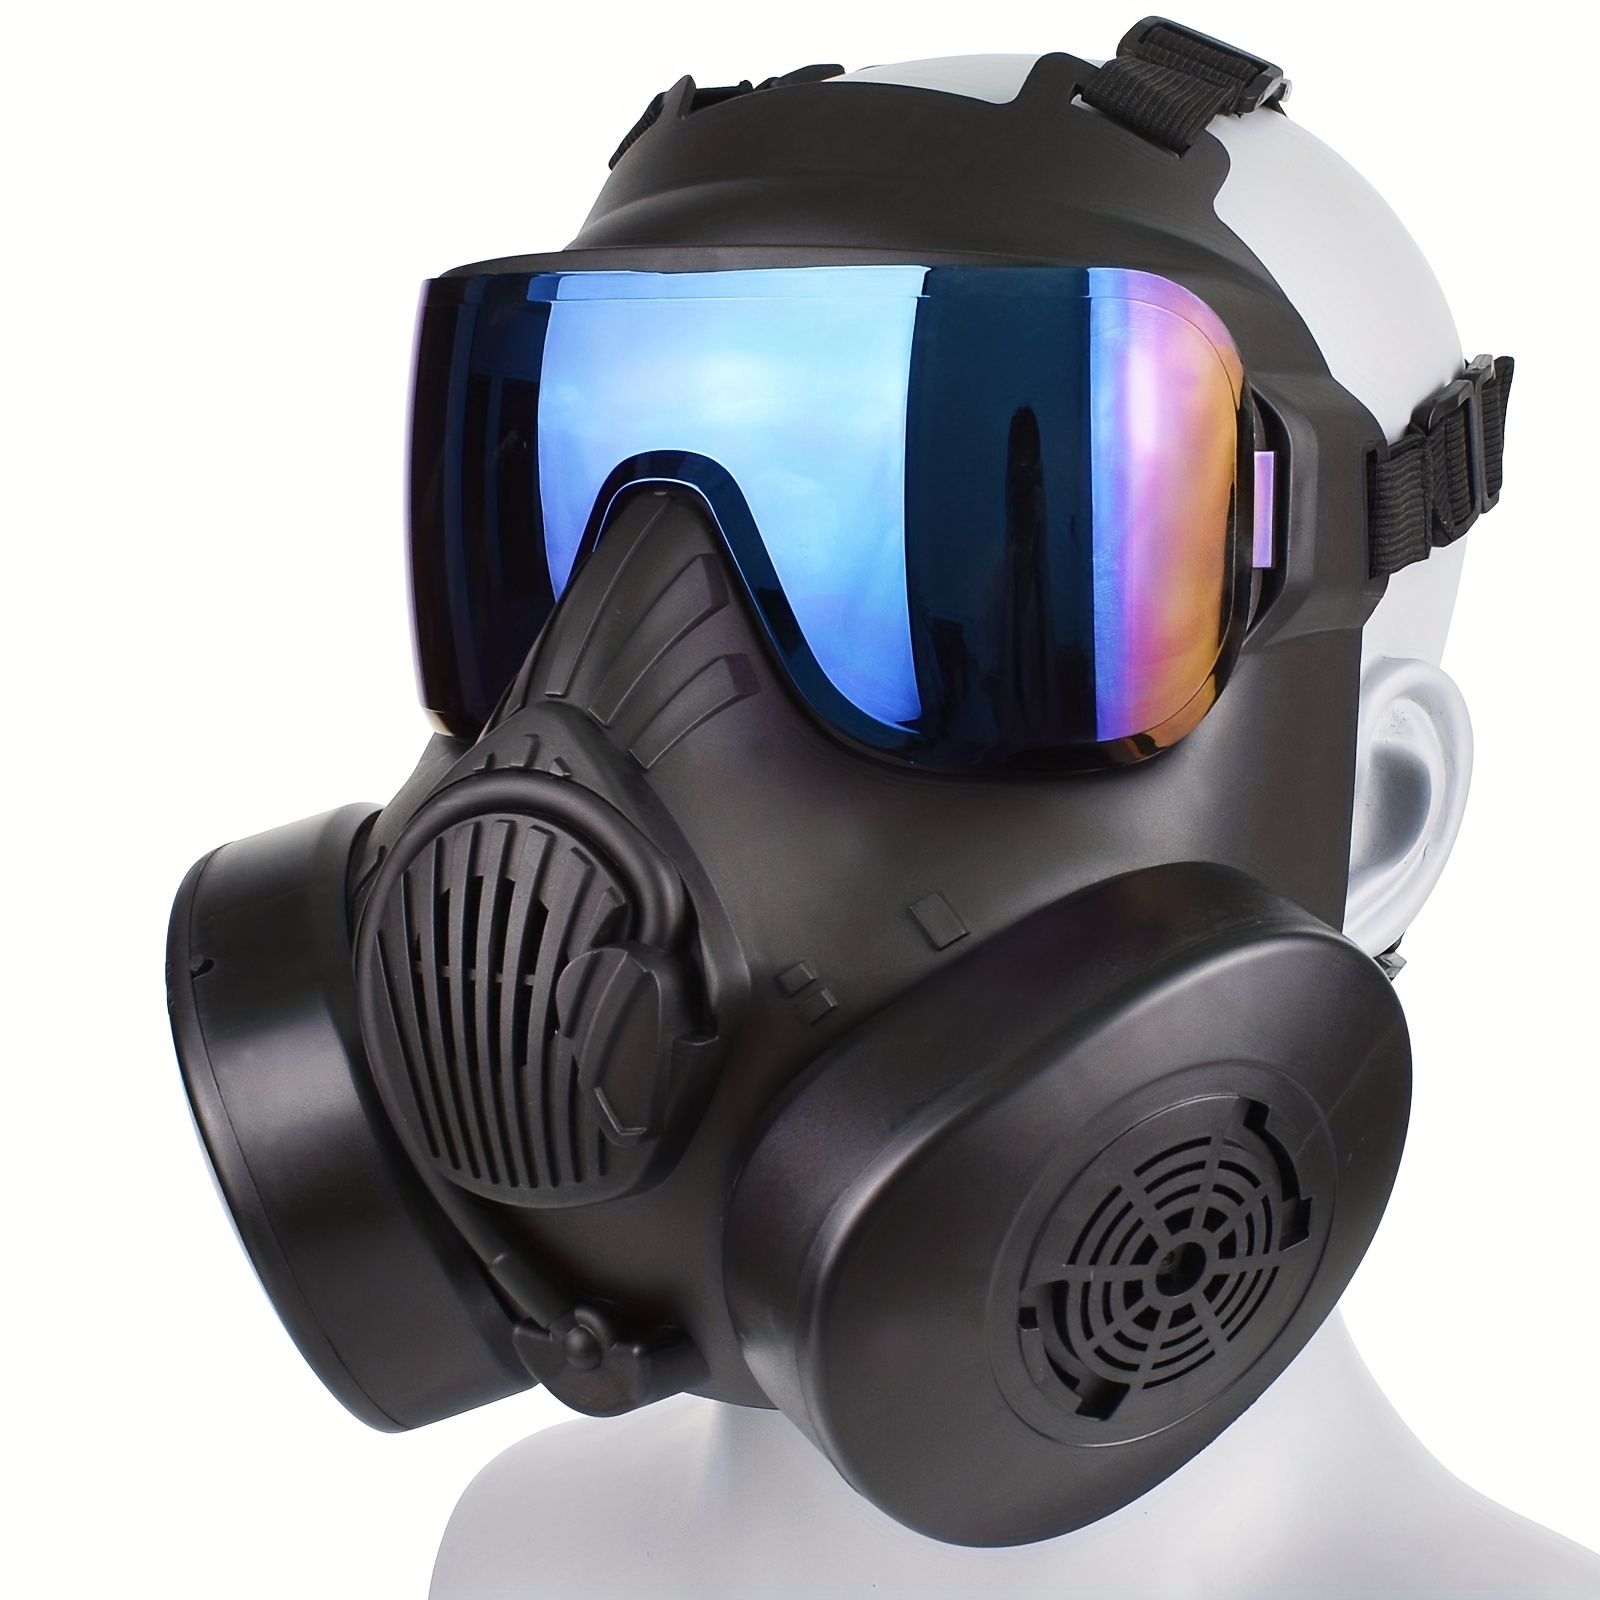 Casco táctico 2 en 1 Airsoft máscara facial completa, casco militar táctico  para cosplay, caza, paintball CS